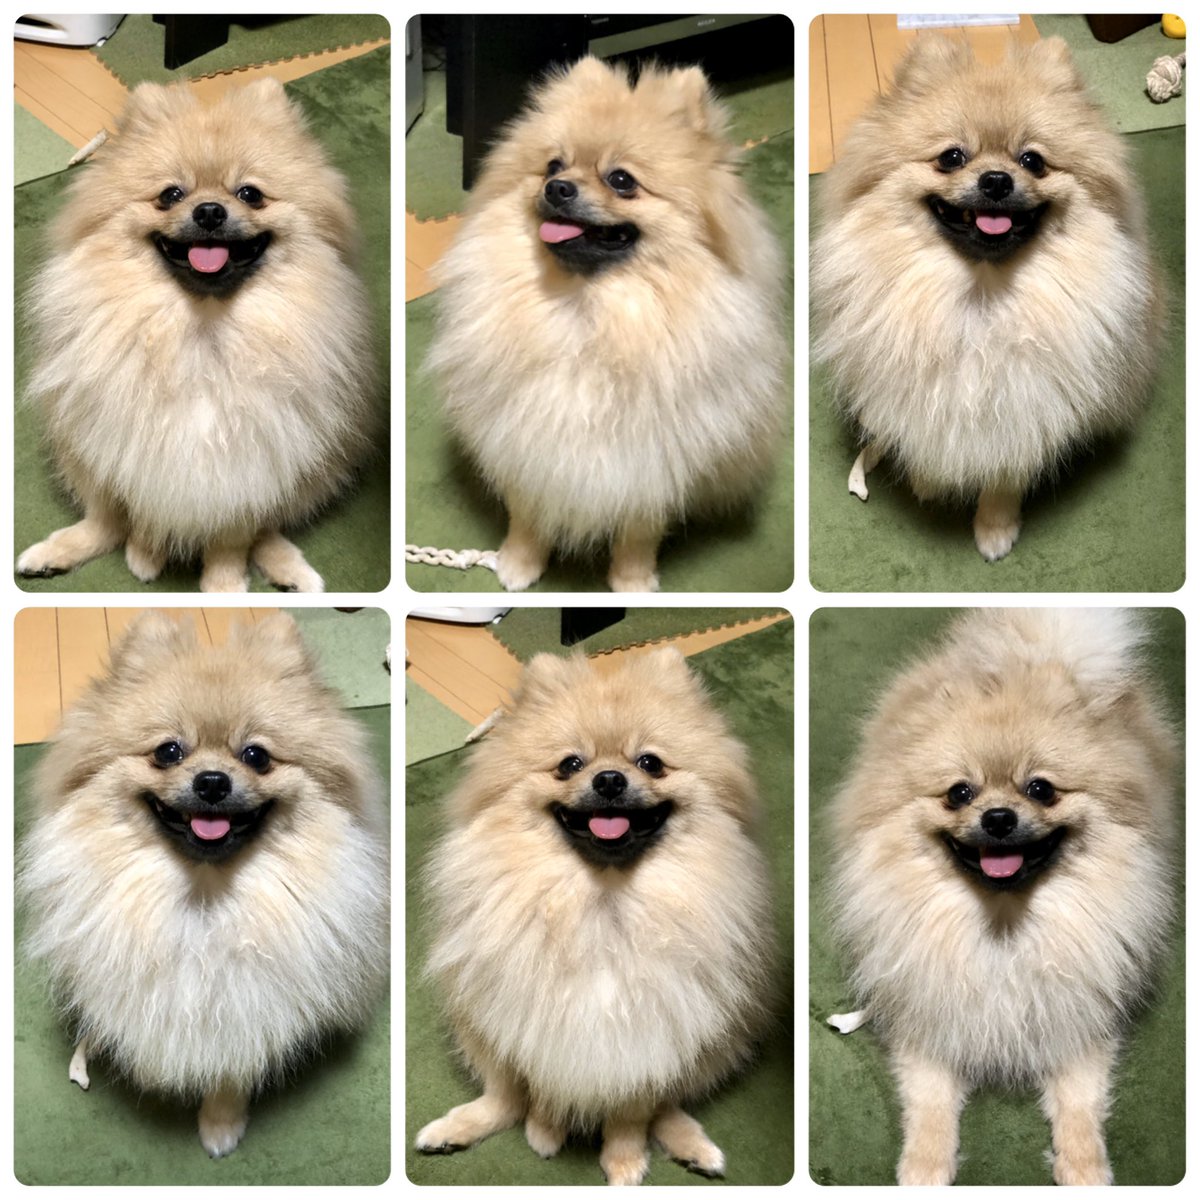 モモ太郎 ポメラニアン よく笑う毛玉犬です